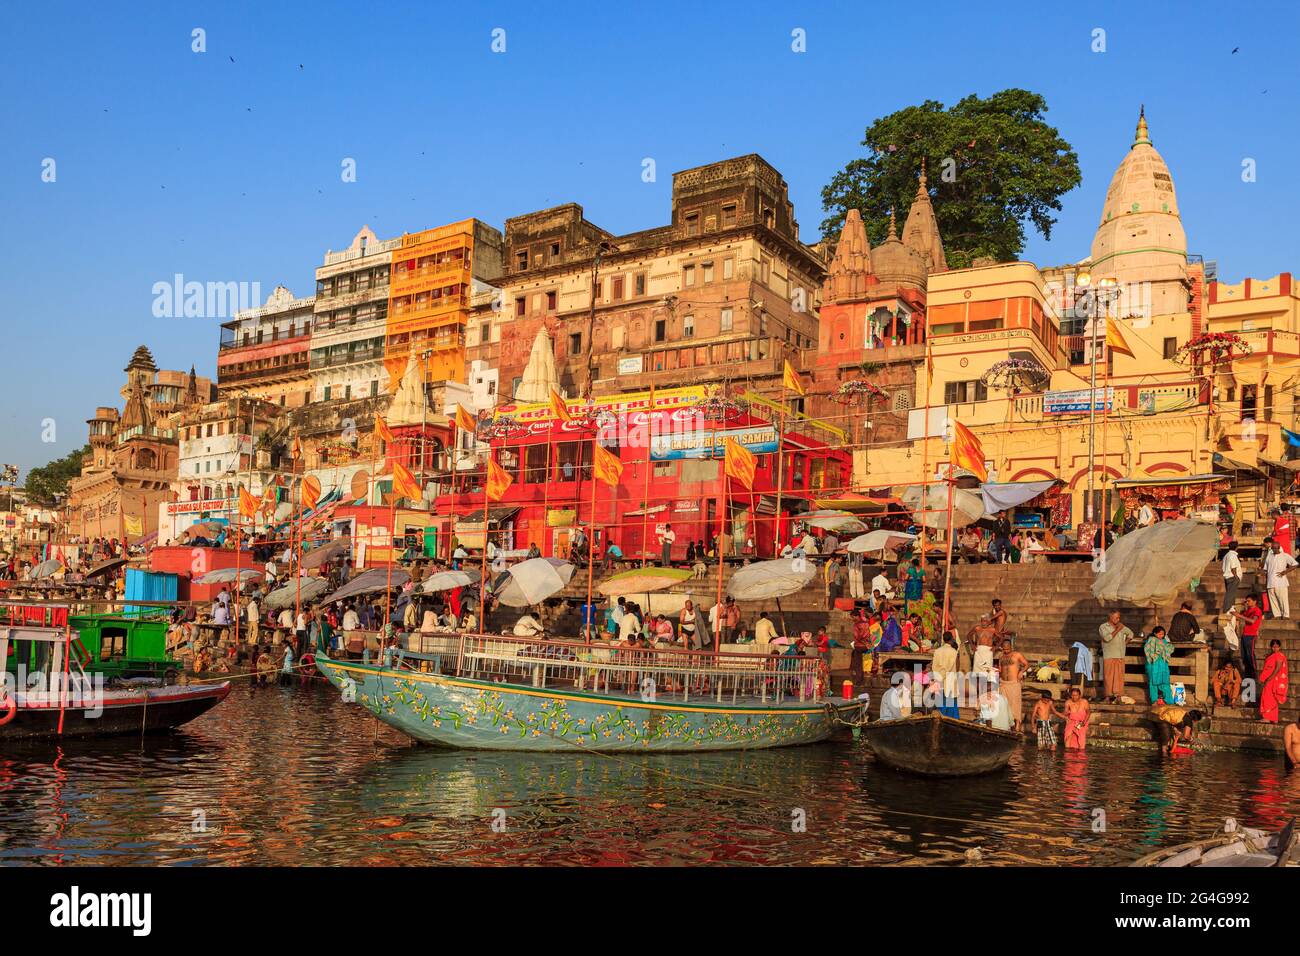 The city of Varanasi in India Stock Photo